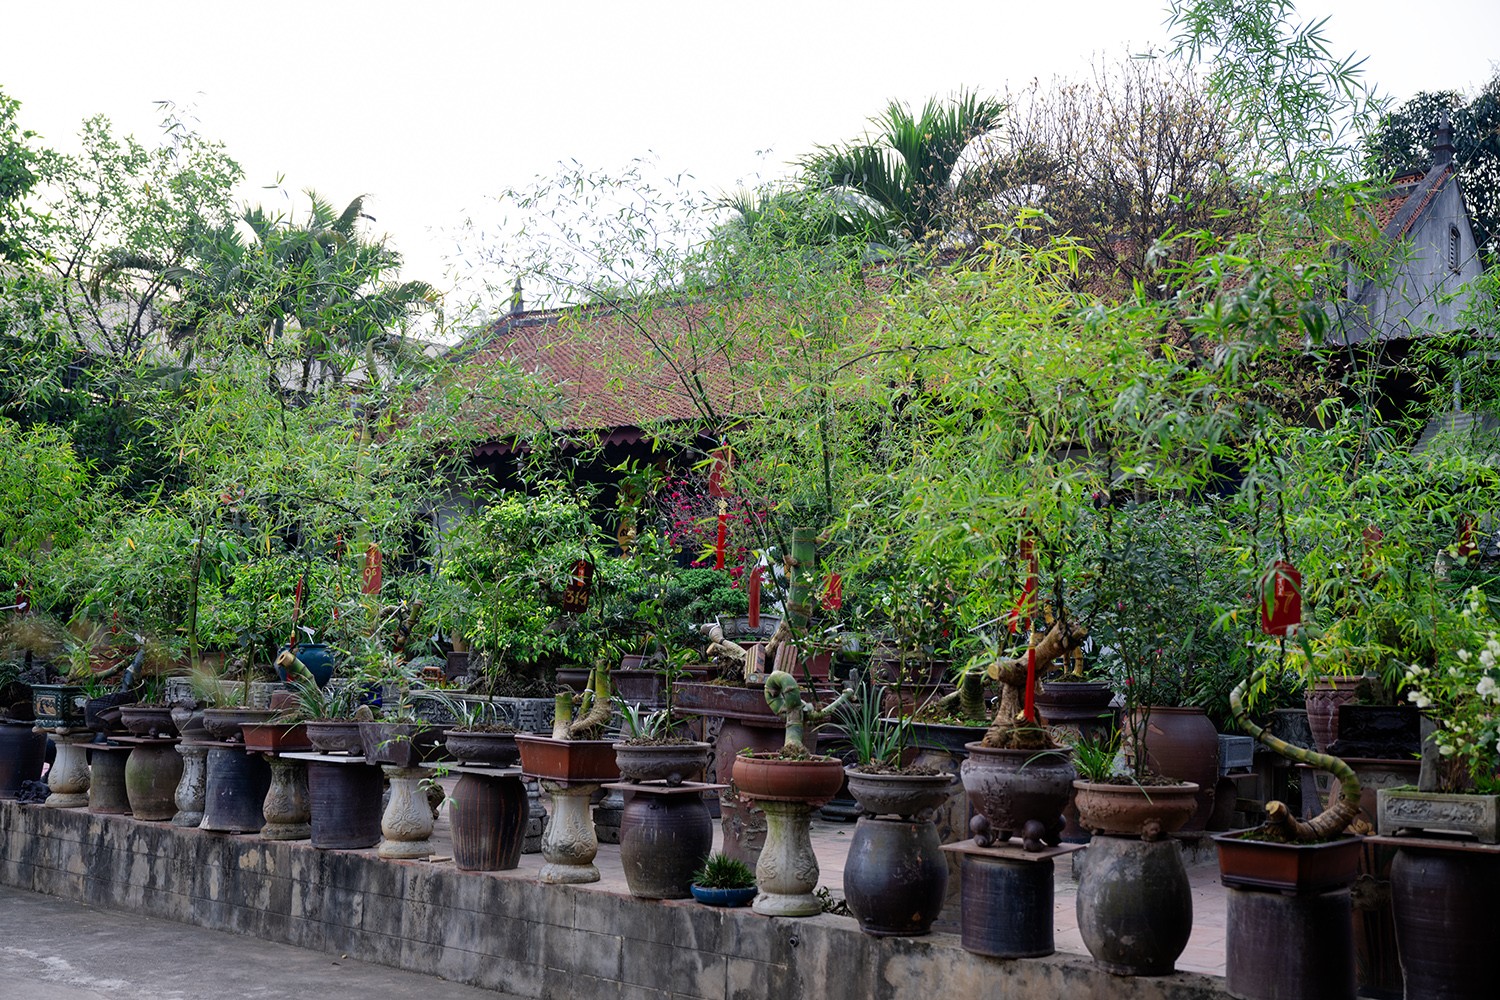 Hợp tác xã Vườn Chum của anh Luân sở hữu hàng trăm cây cảnh, cây bonsai các loại, tuy nhiên nổi bật hơn cả trong đó là những chậu tre bonsai.